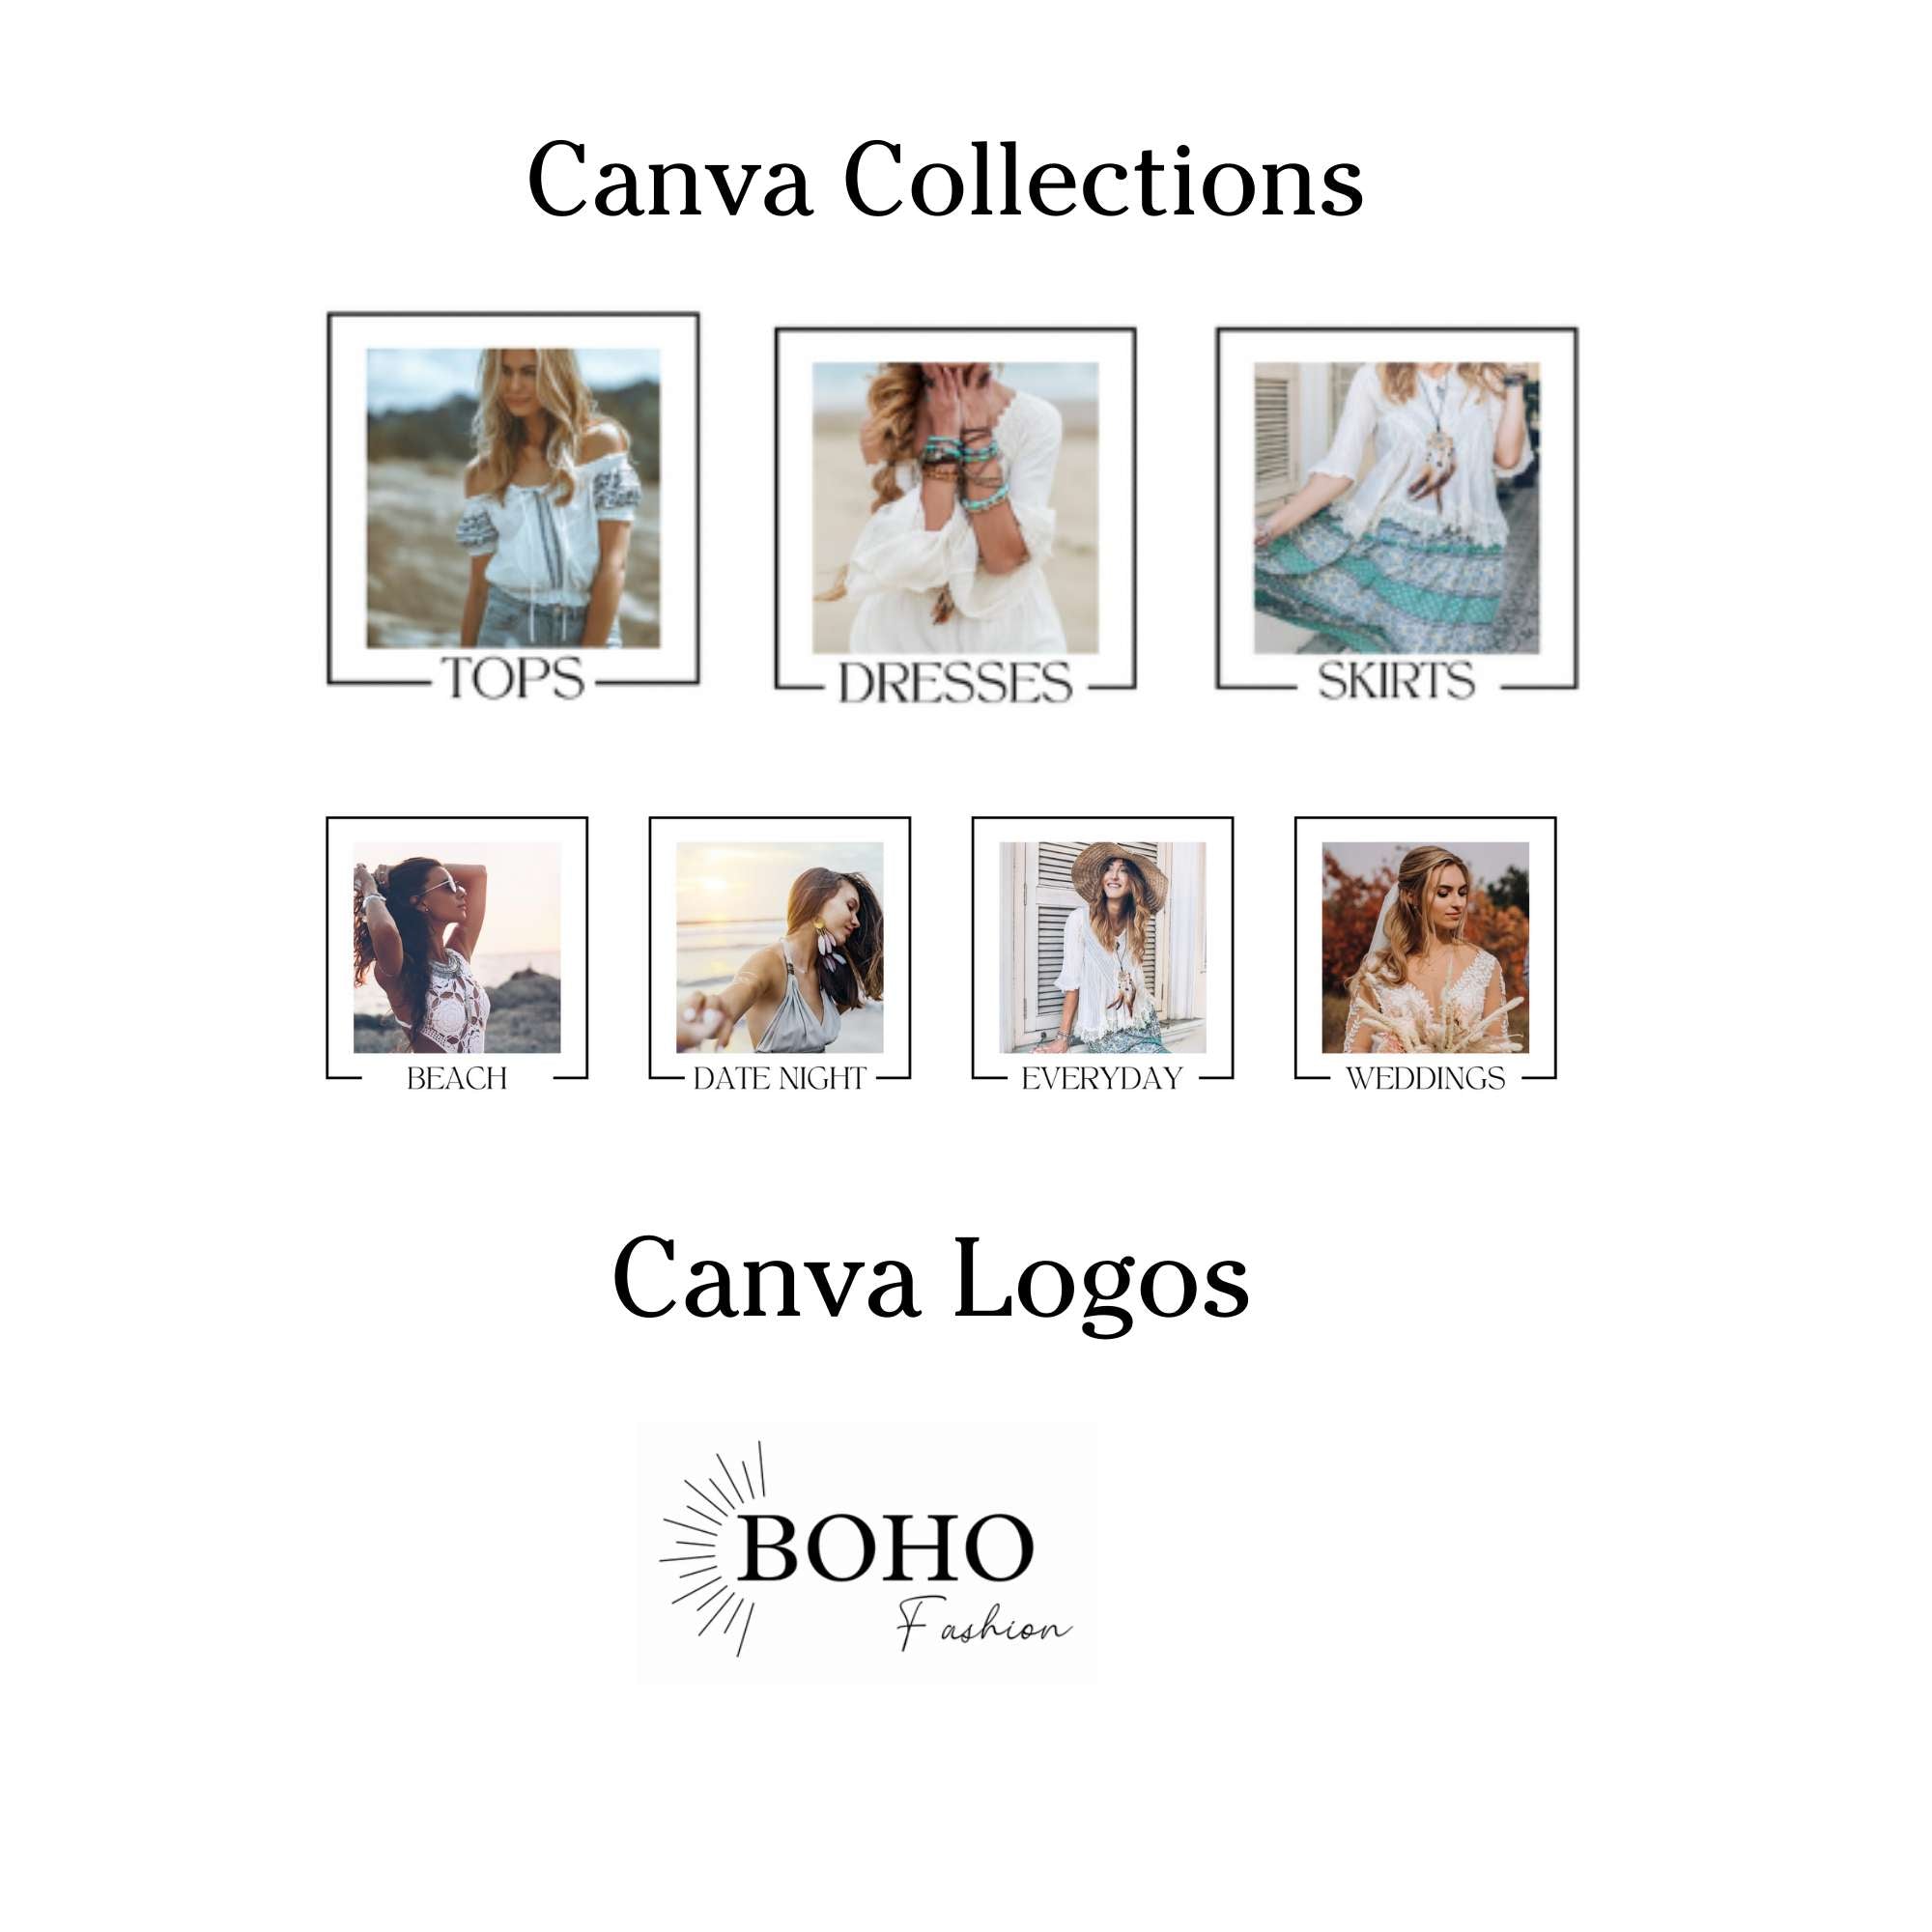 Fashion boho shop website template